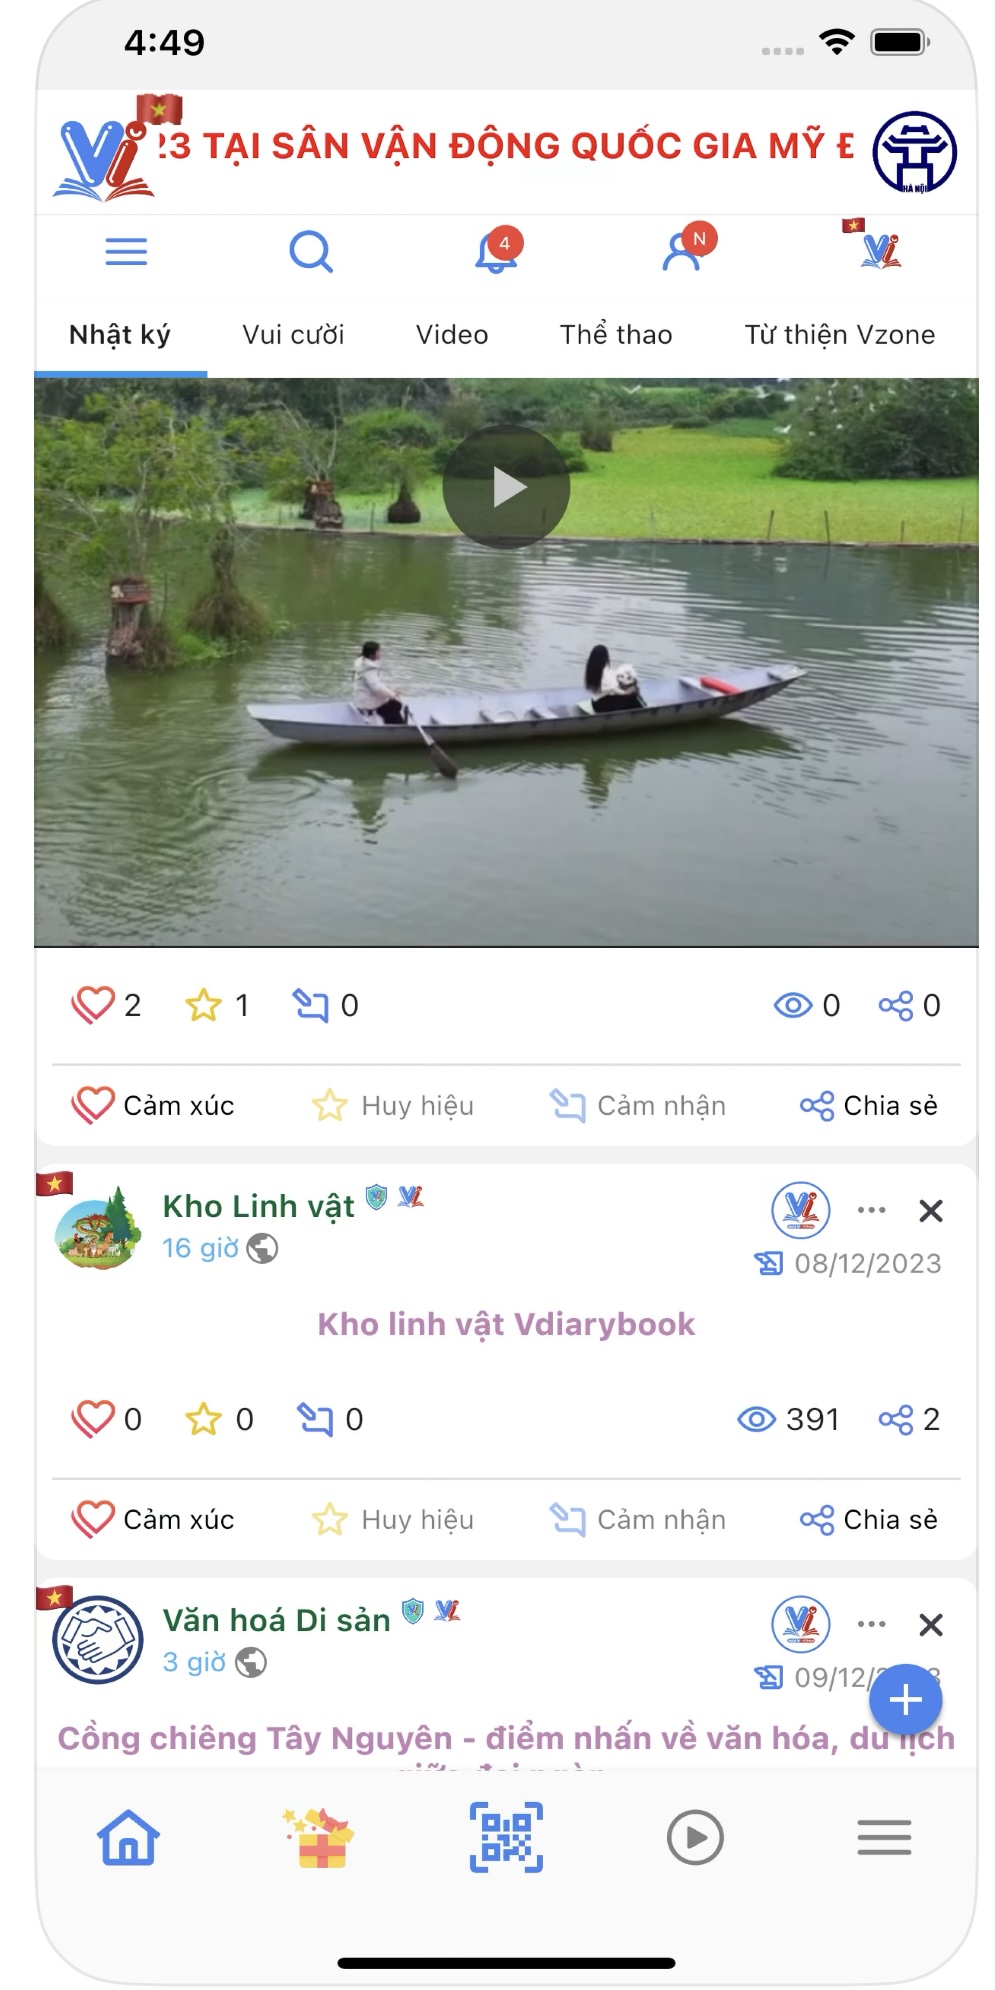 Mạng xã hội Vdiarybook của người Việt có gì nổi bật?- Ảnh 2.